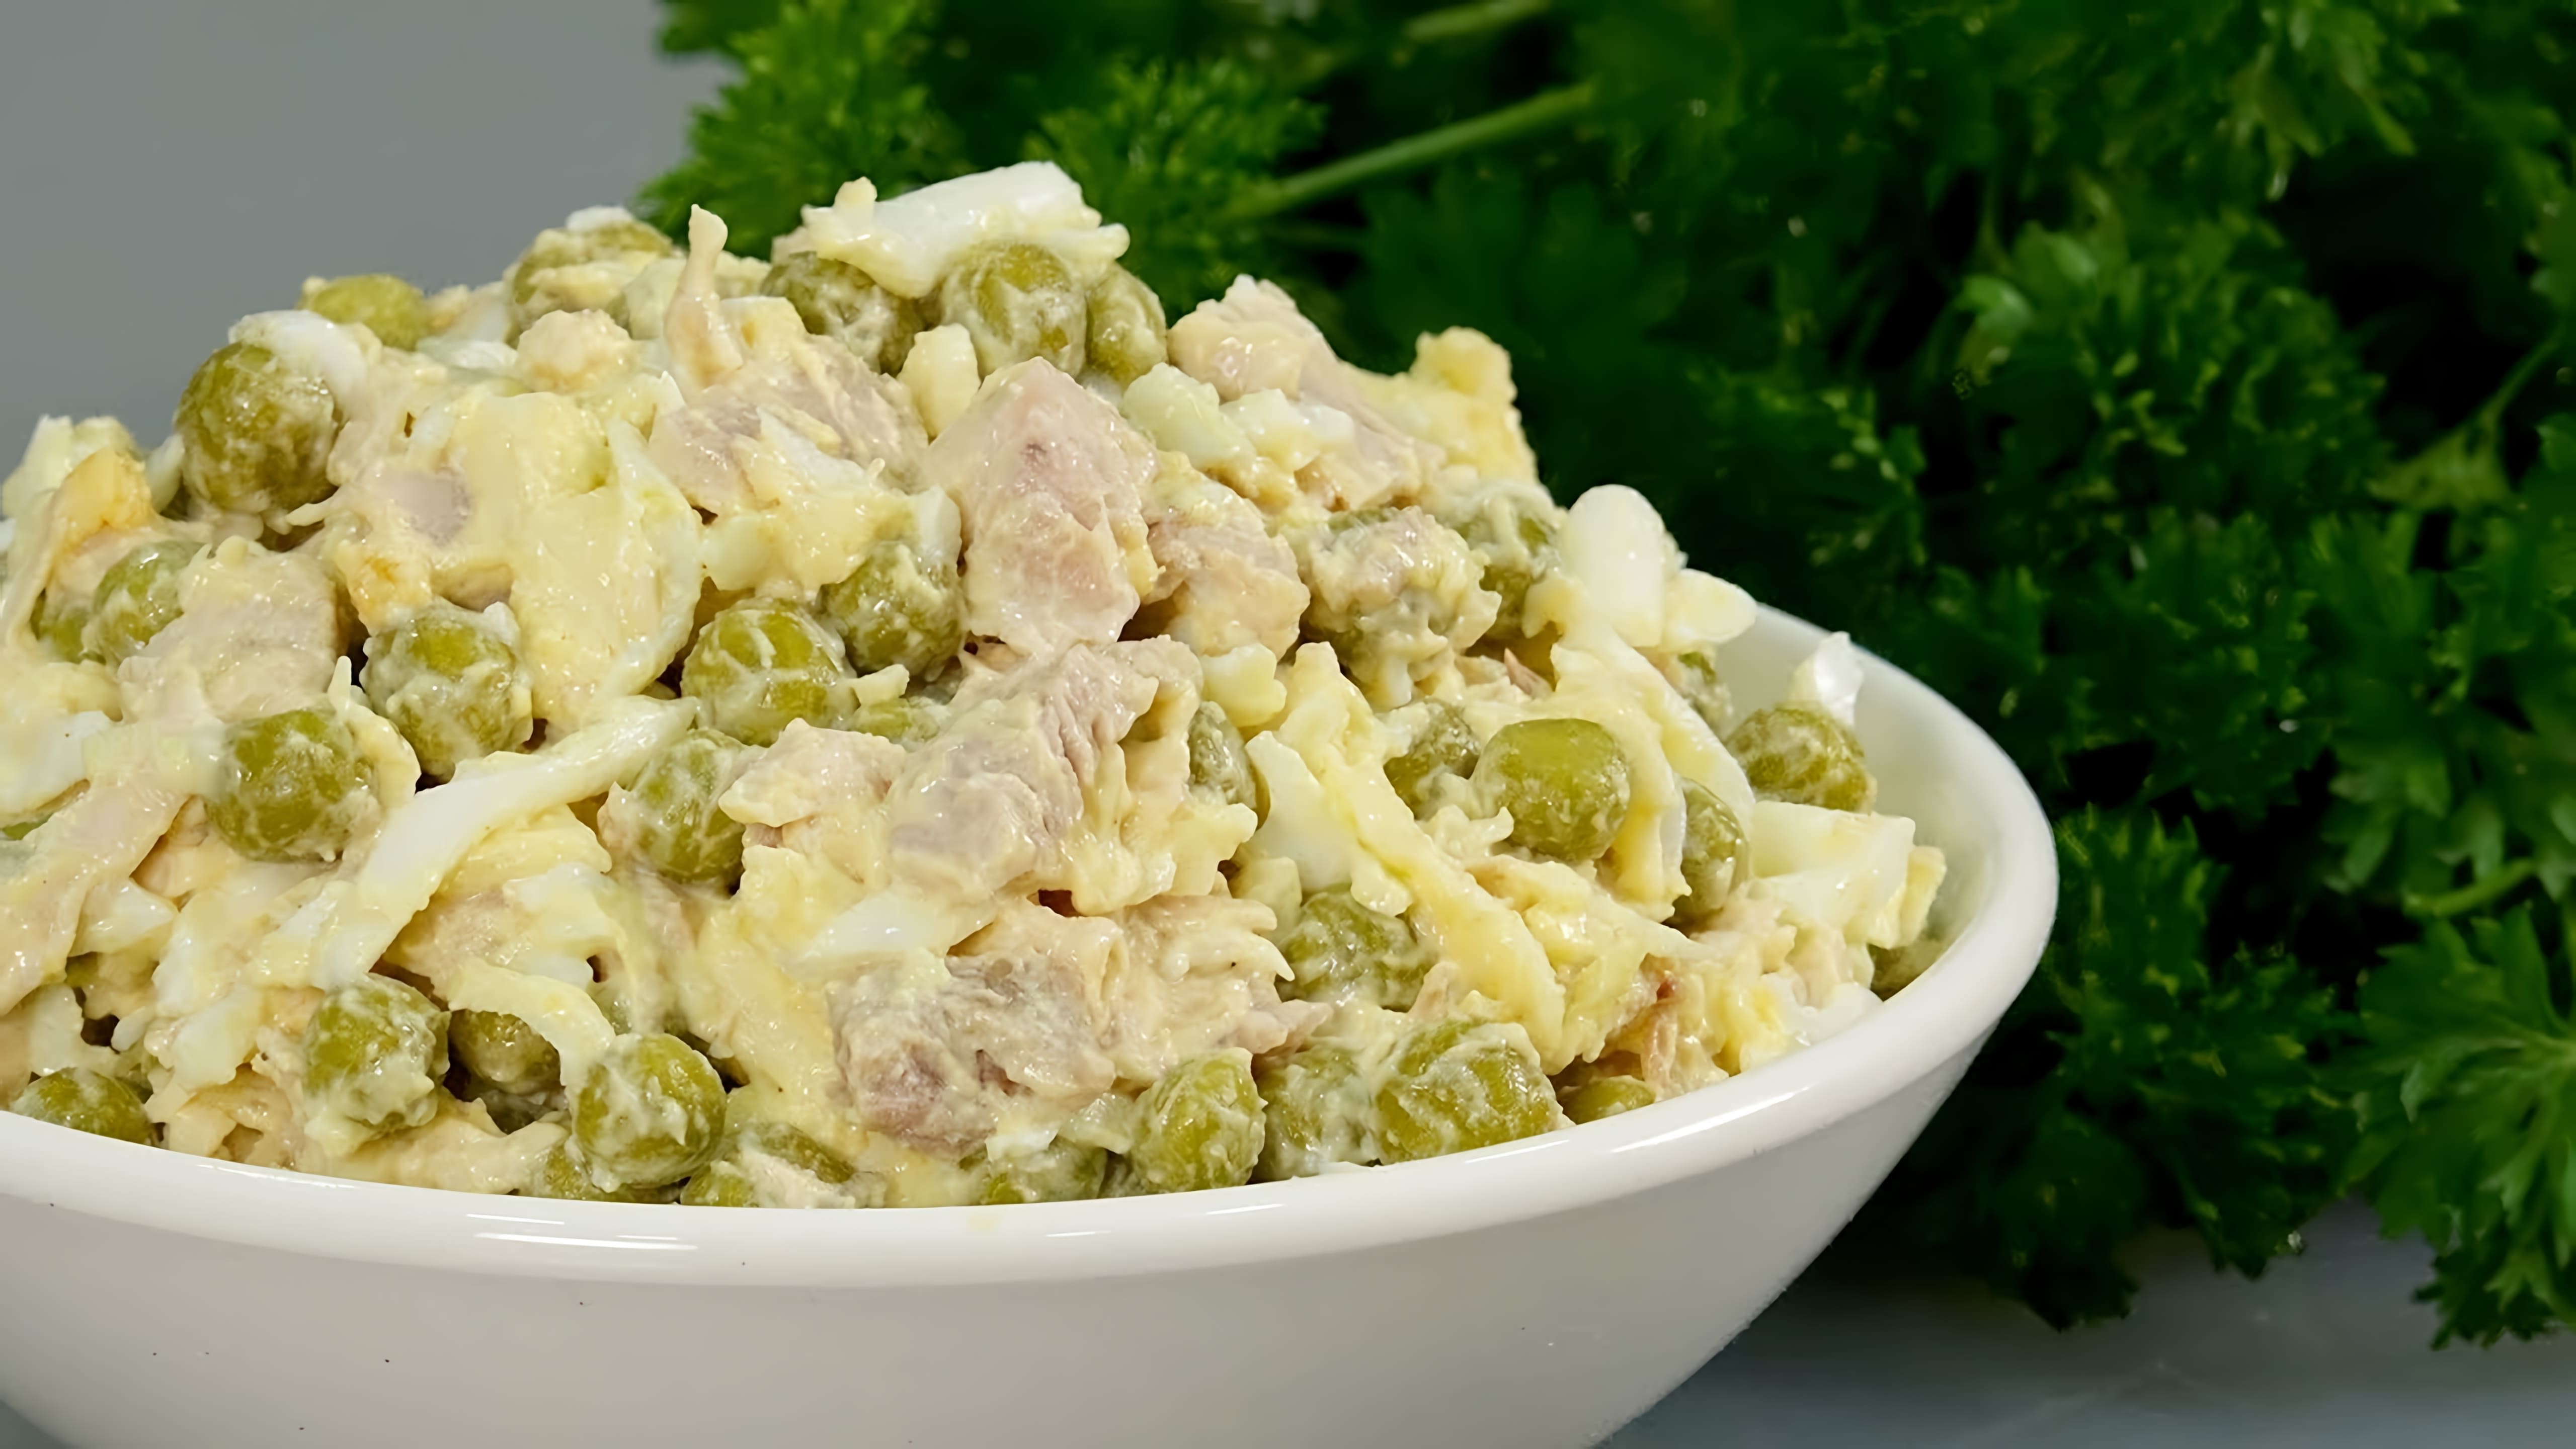 Видео рецепт куриного салата под названием "Цыпочка", который тетя создателя часто готовит вместо салата "Оливье" на праздники и торжества